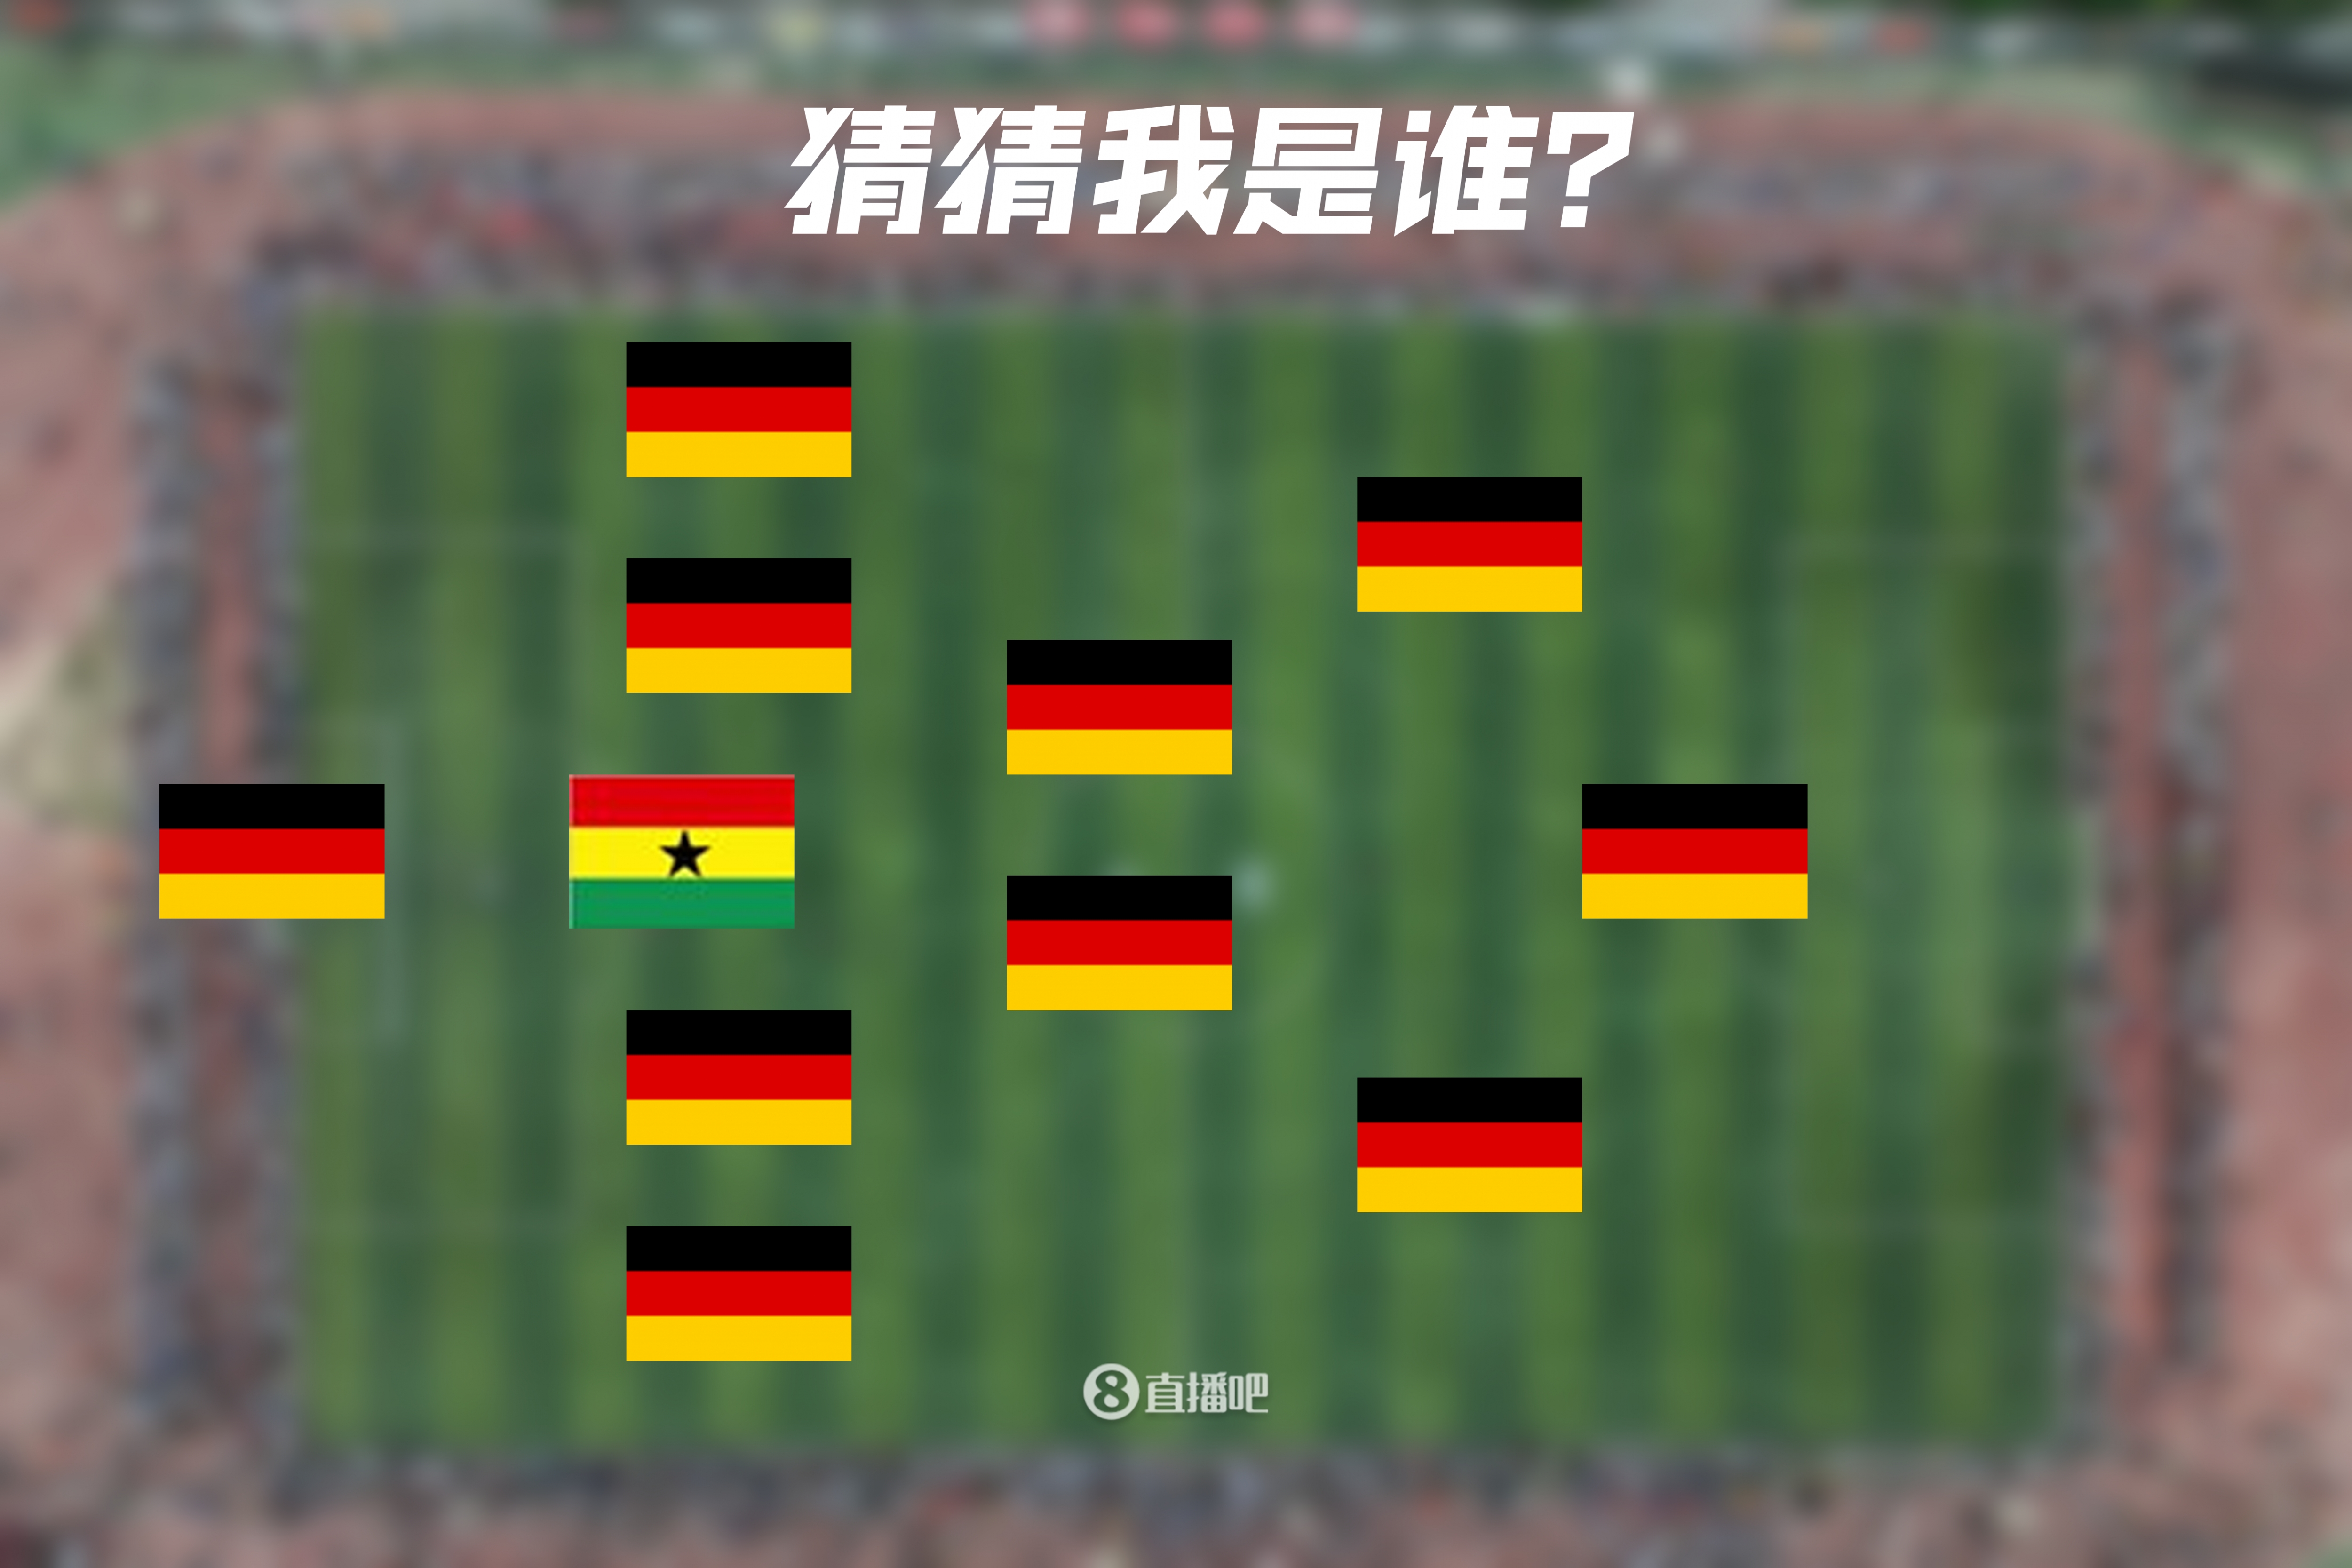 一眼懵逼?加纳后卫+10个德国人，这是哪支队&他们分别是谁？